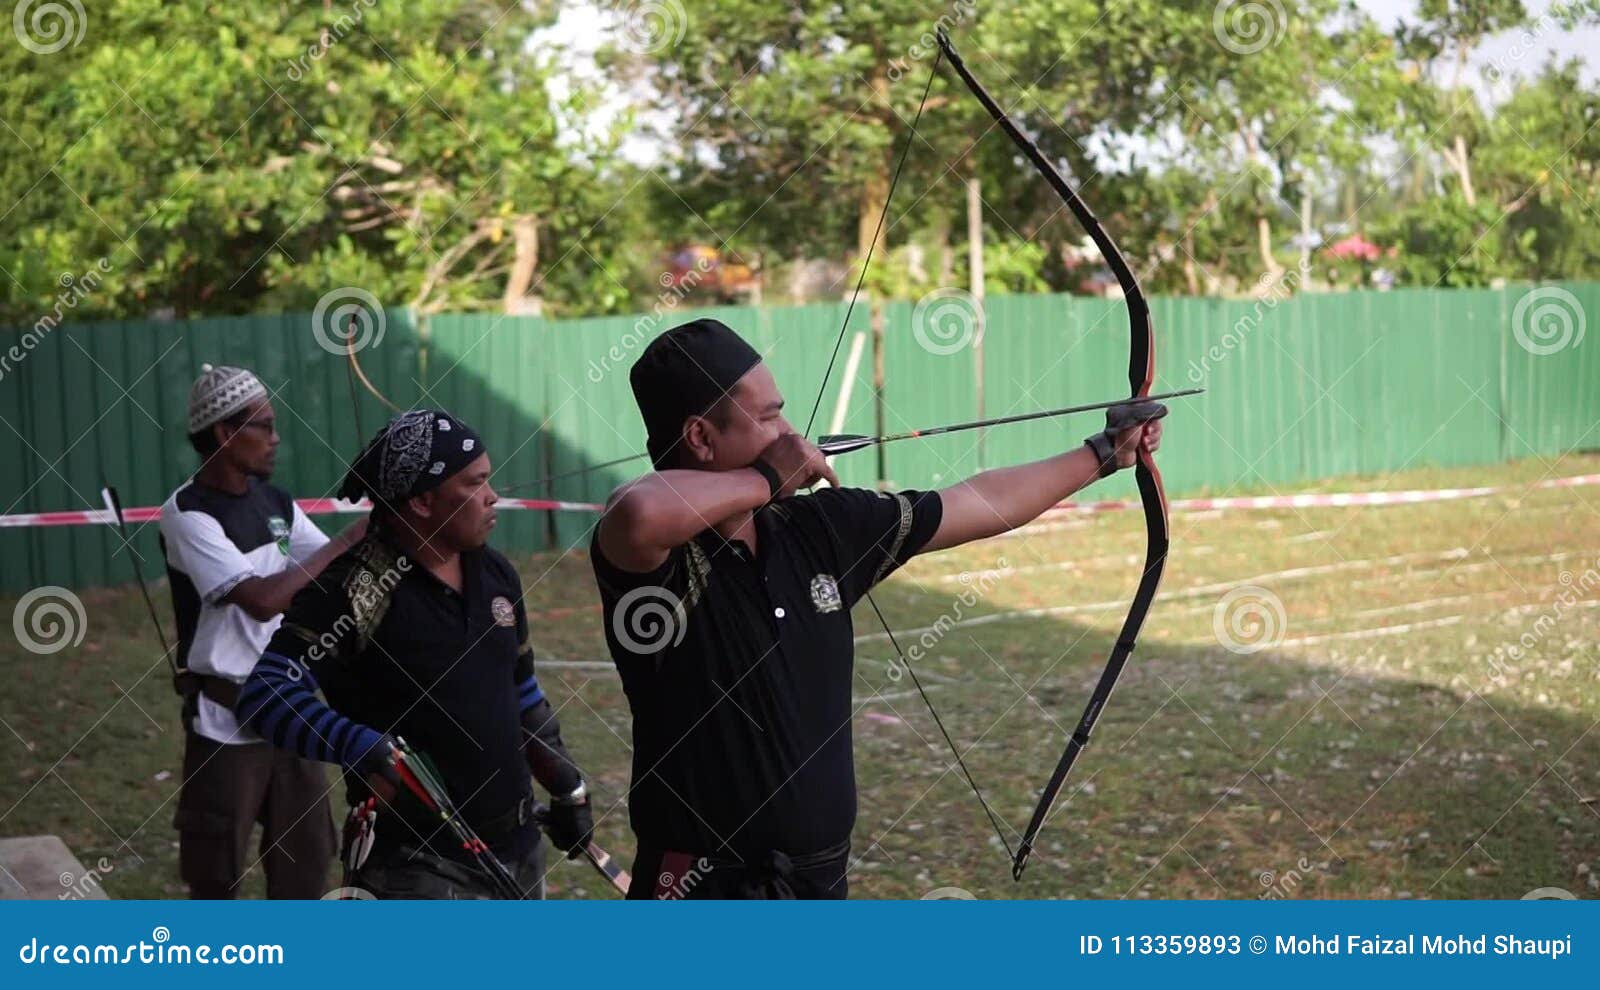 Archery malaysia